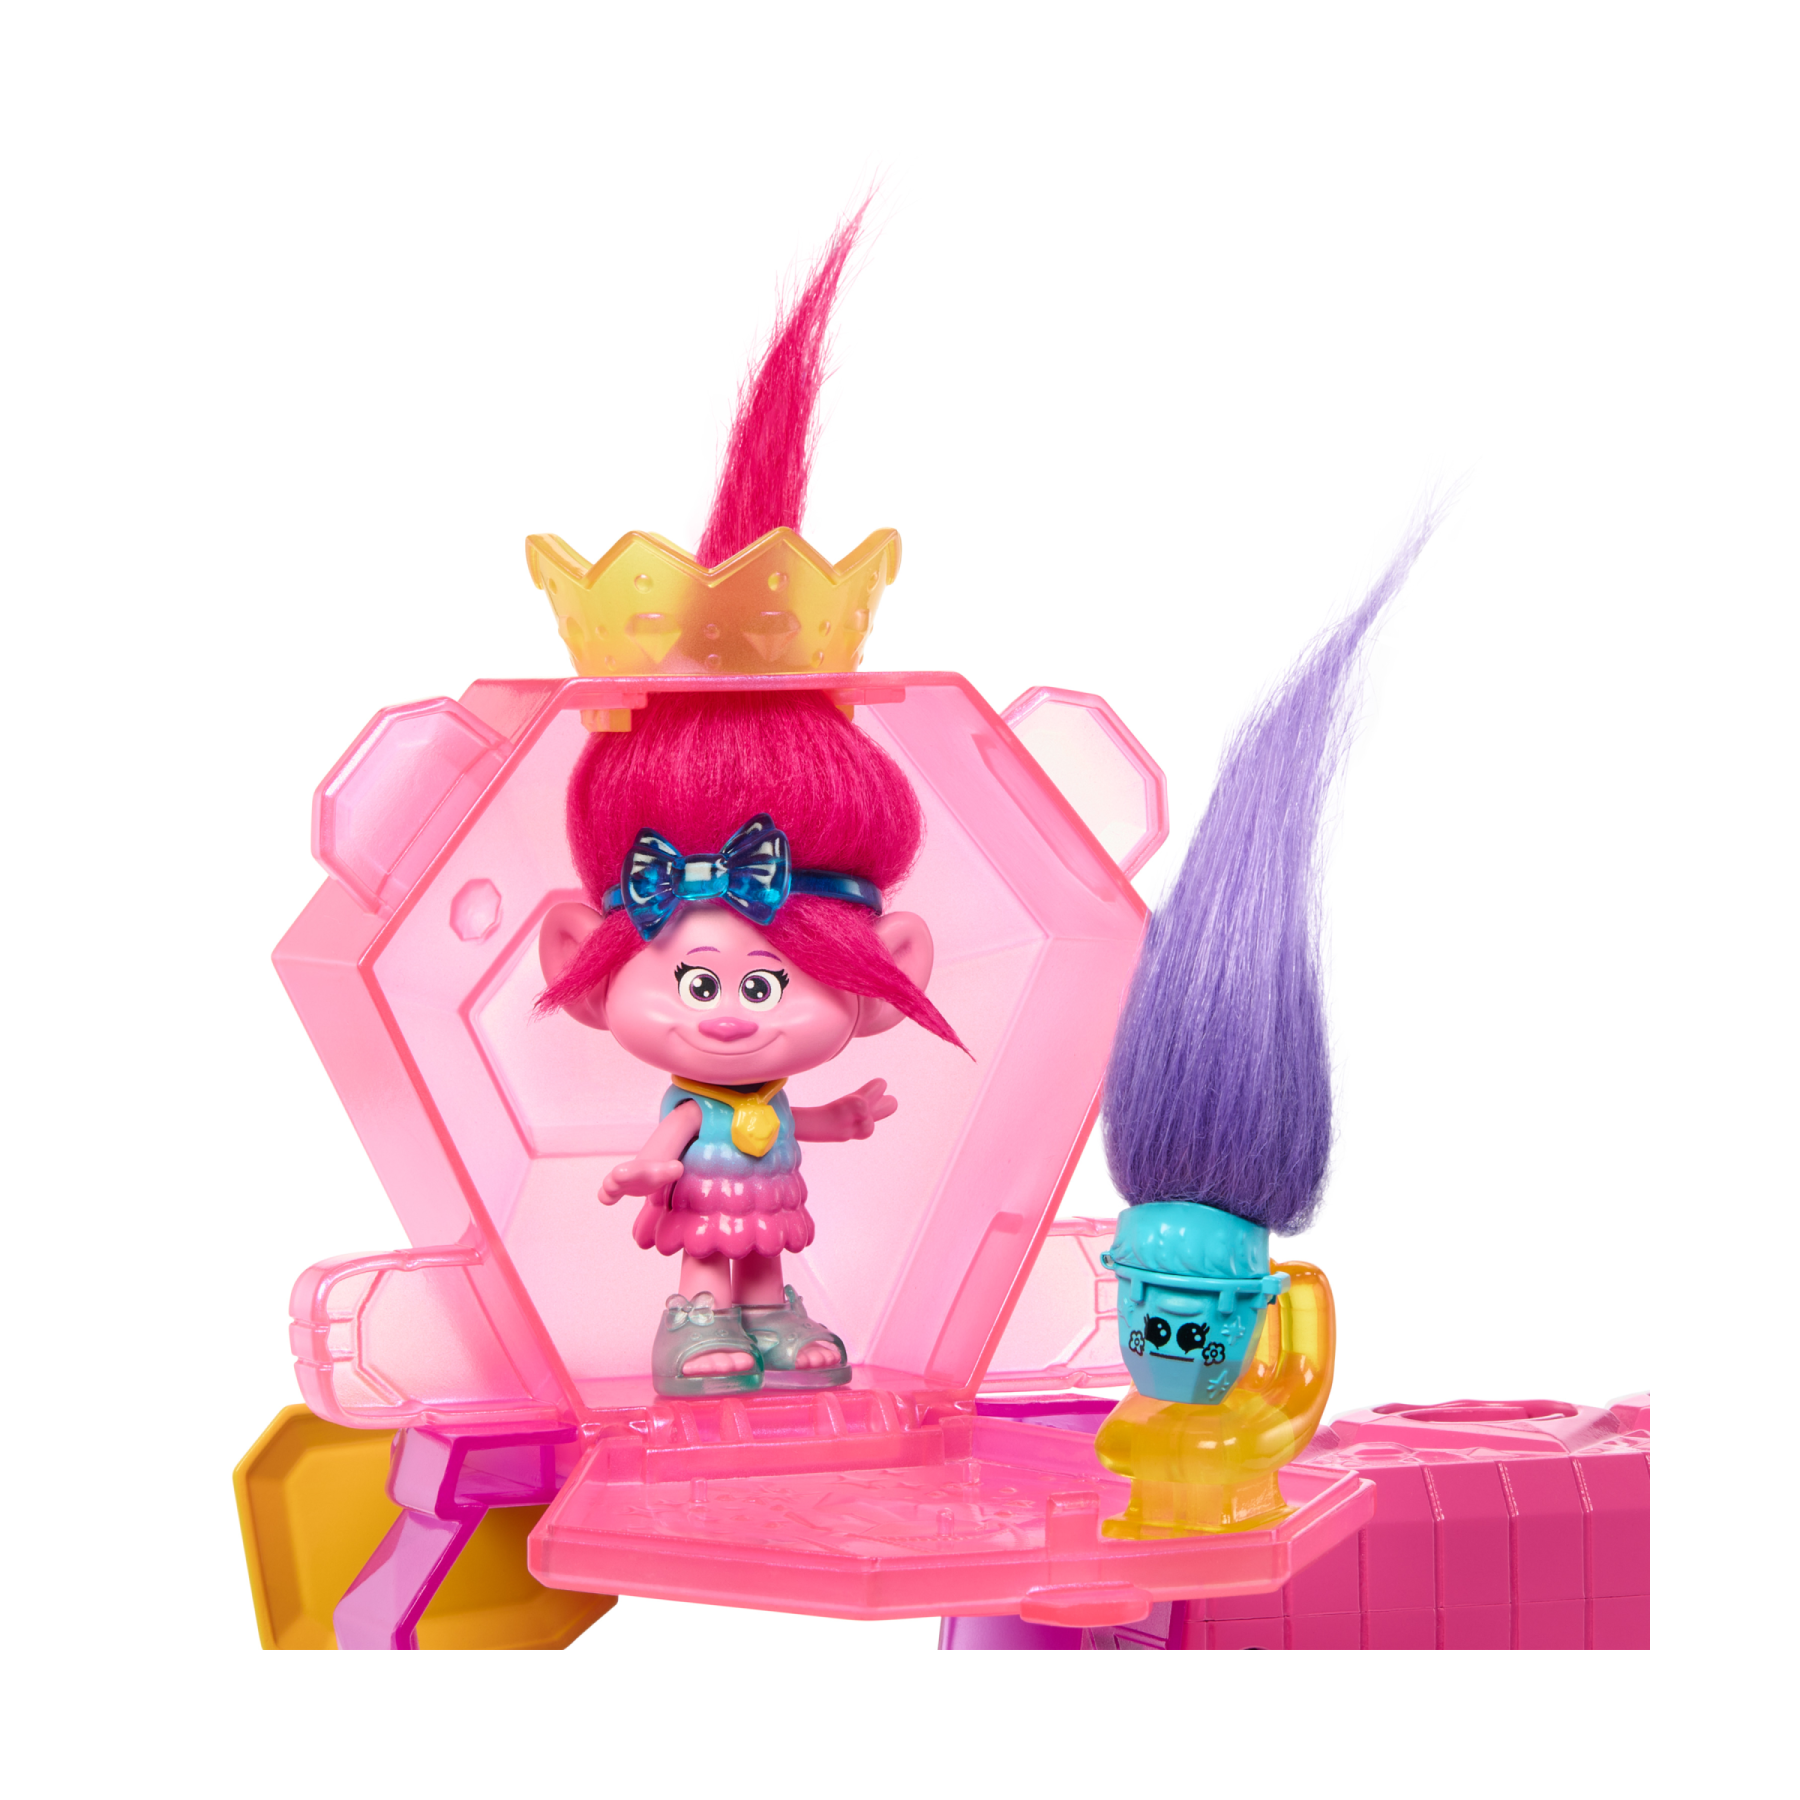 Dreamworks trolls tutti insieme - playset mount rageous, con una mini bambola regina poppy, 4 amici hair pops e 25+ accessori inclusi, ispirato al film, 3+ anni, hnv37 - Trolls